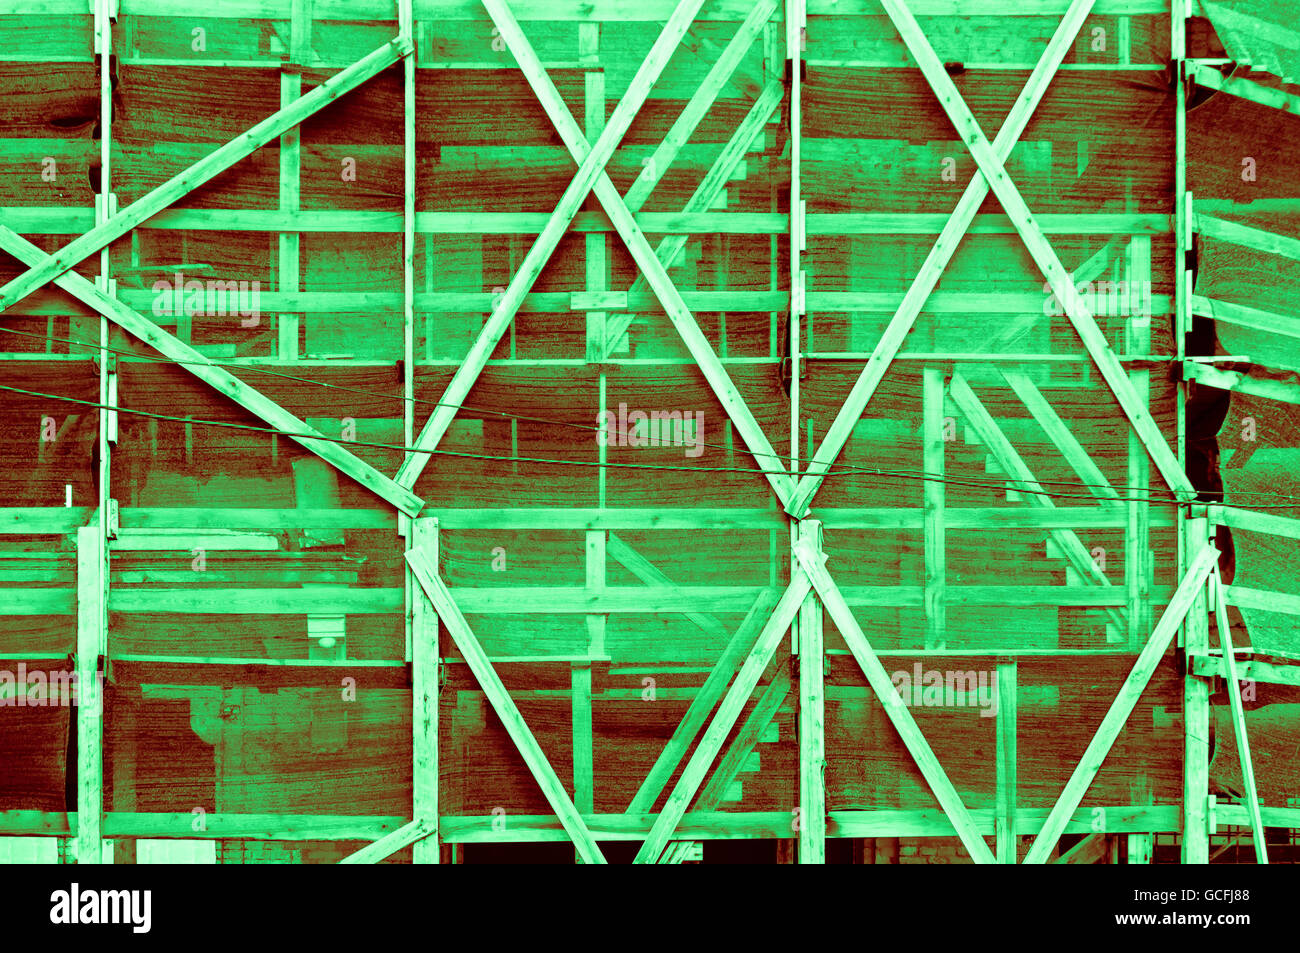 Beeindruckende Licht dunkel grünen rötliche grünlichen Rahmen außerhalb einer ukrainischen Baustil Stockfoto